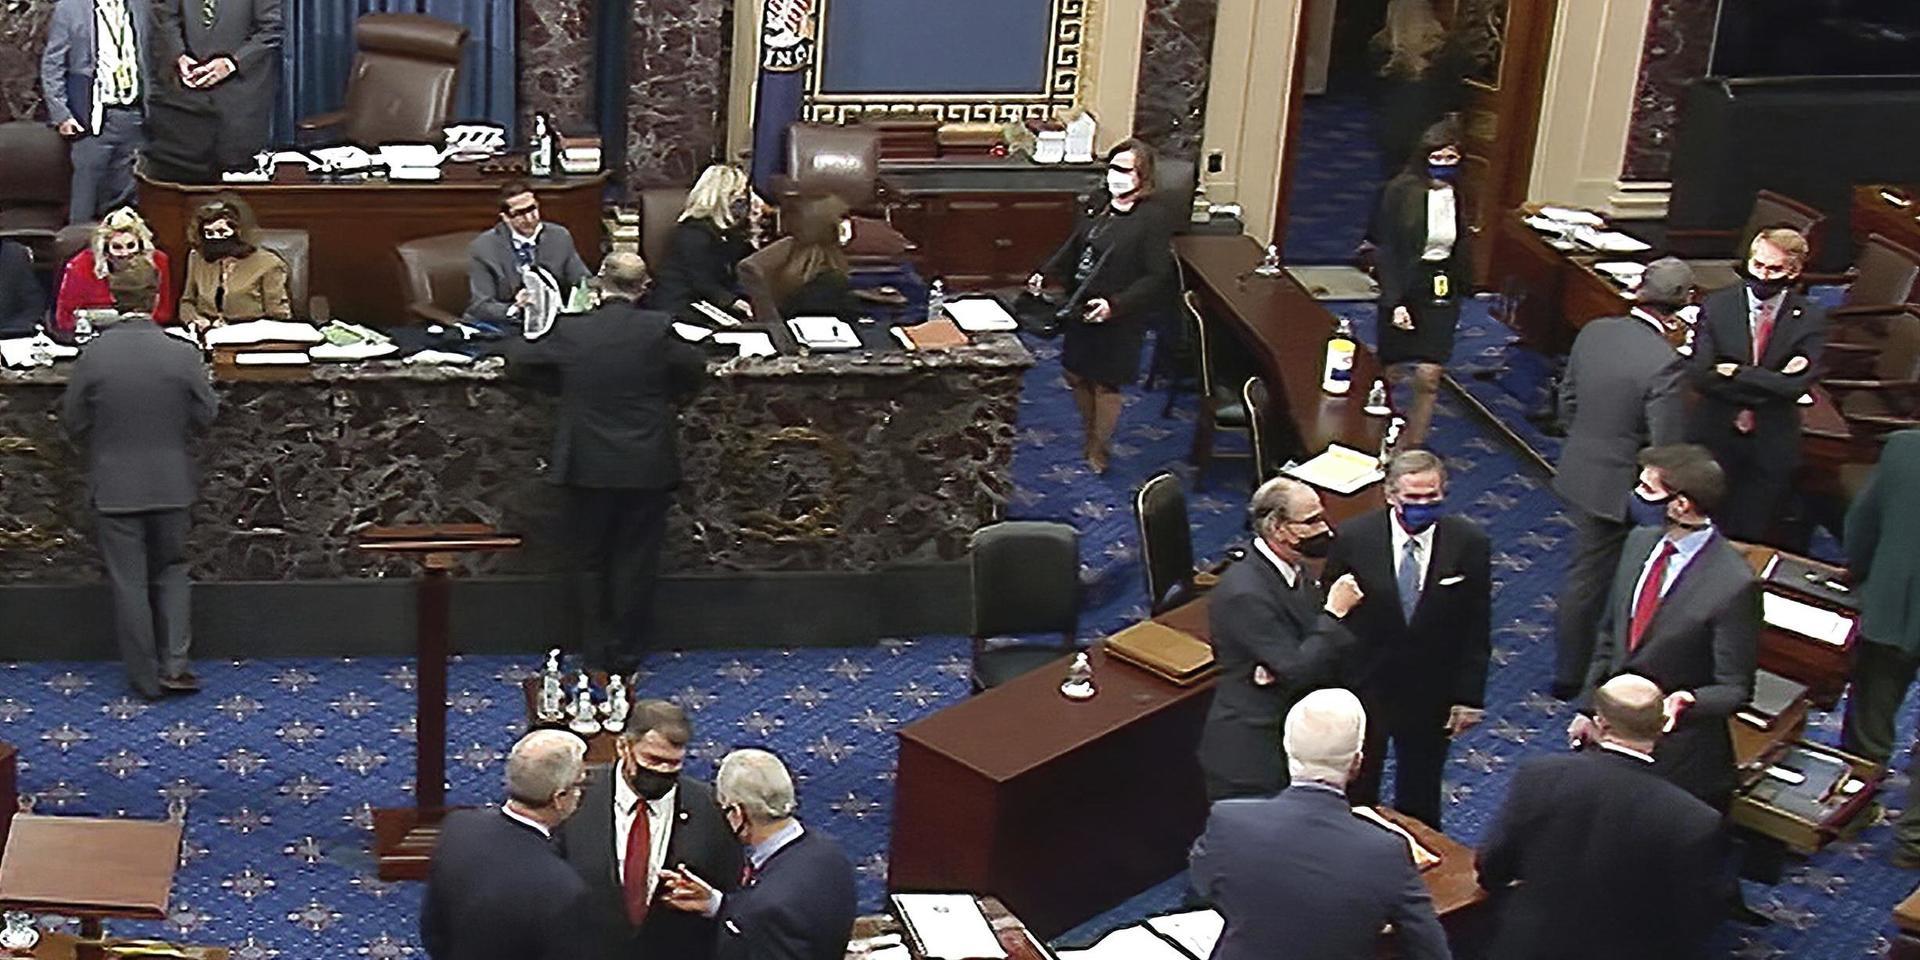 Republikanska senatorer under en paus i riksrätten.